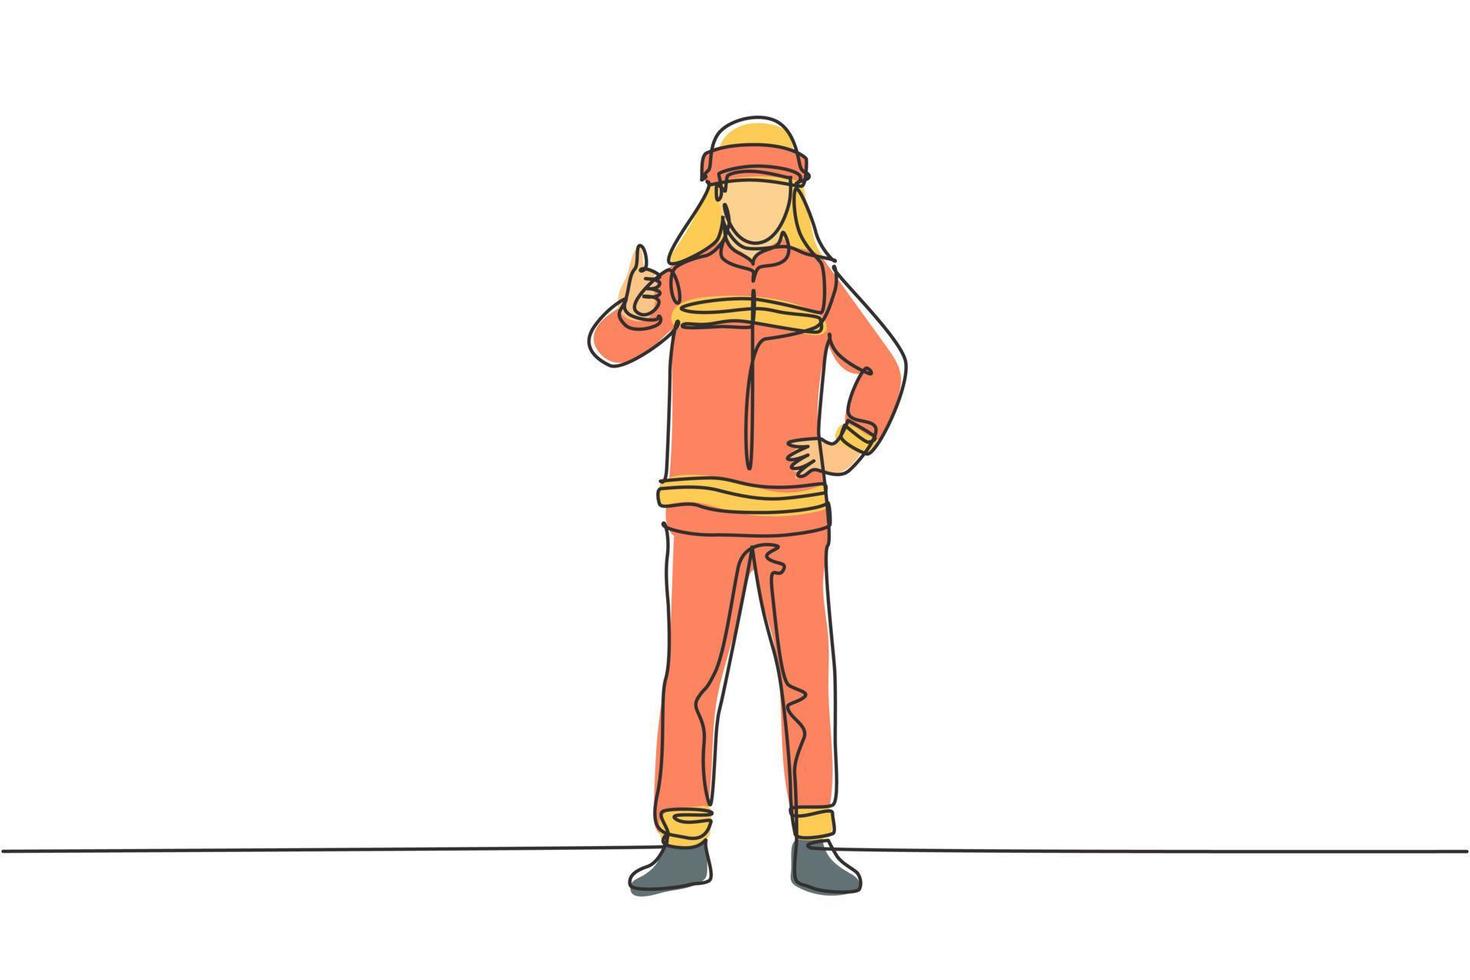 enda en linje ritning av brandmän stod bär hjälmar och uniformer komplett med en tumme upp för att arbeta för att släcka elden. kontinuerlig linje rita design grafisk vektor illustration.